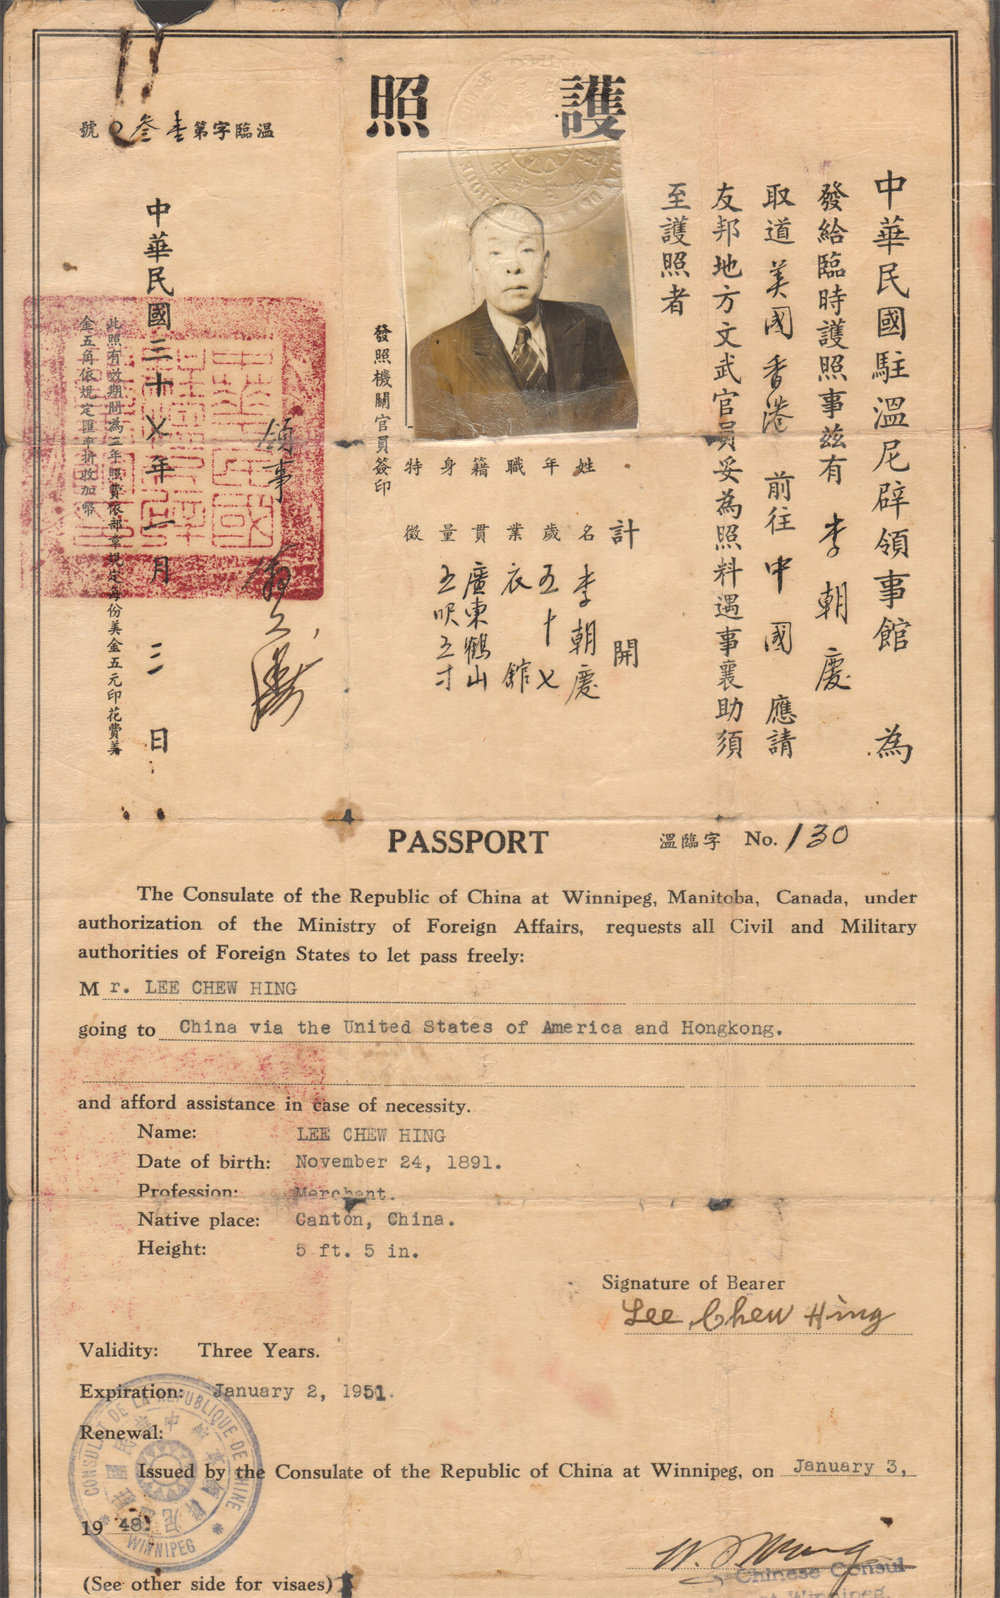 039766 中华民国三十七年驻温尼辟领事馆发给李朝庆的护照.jpg